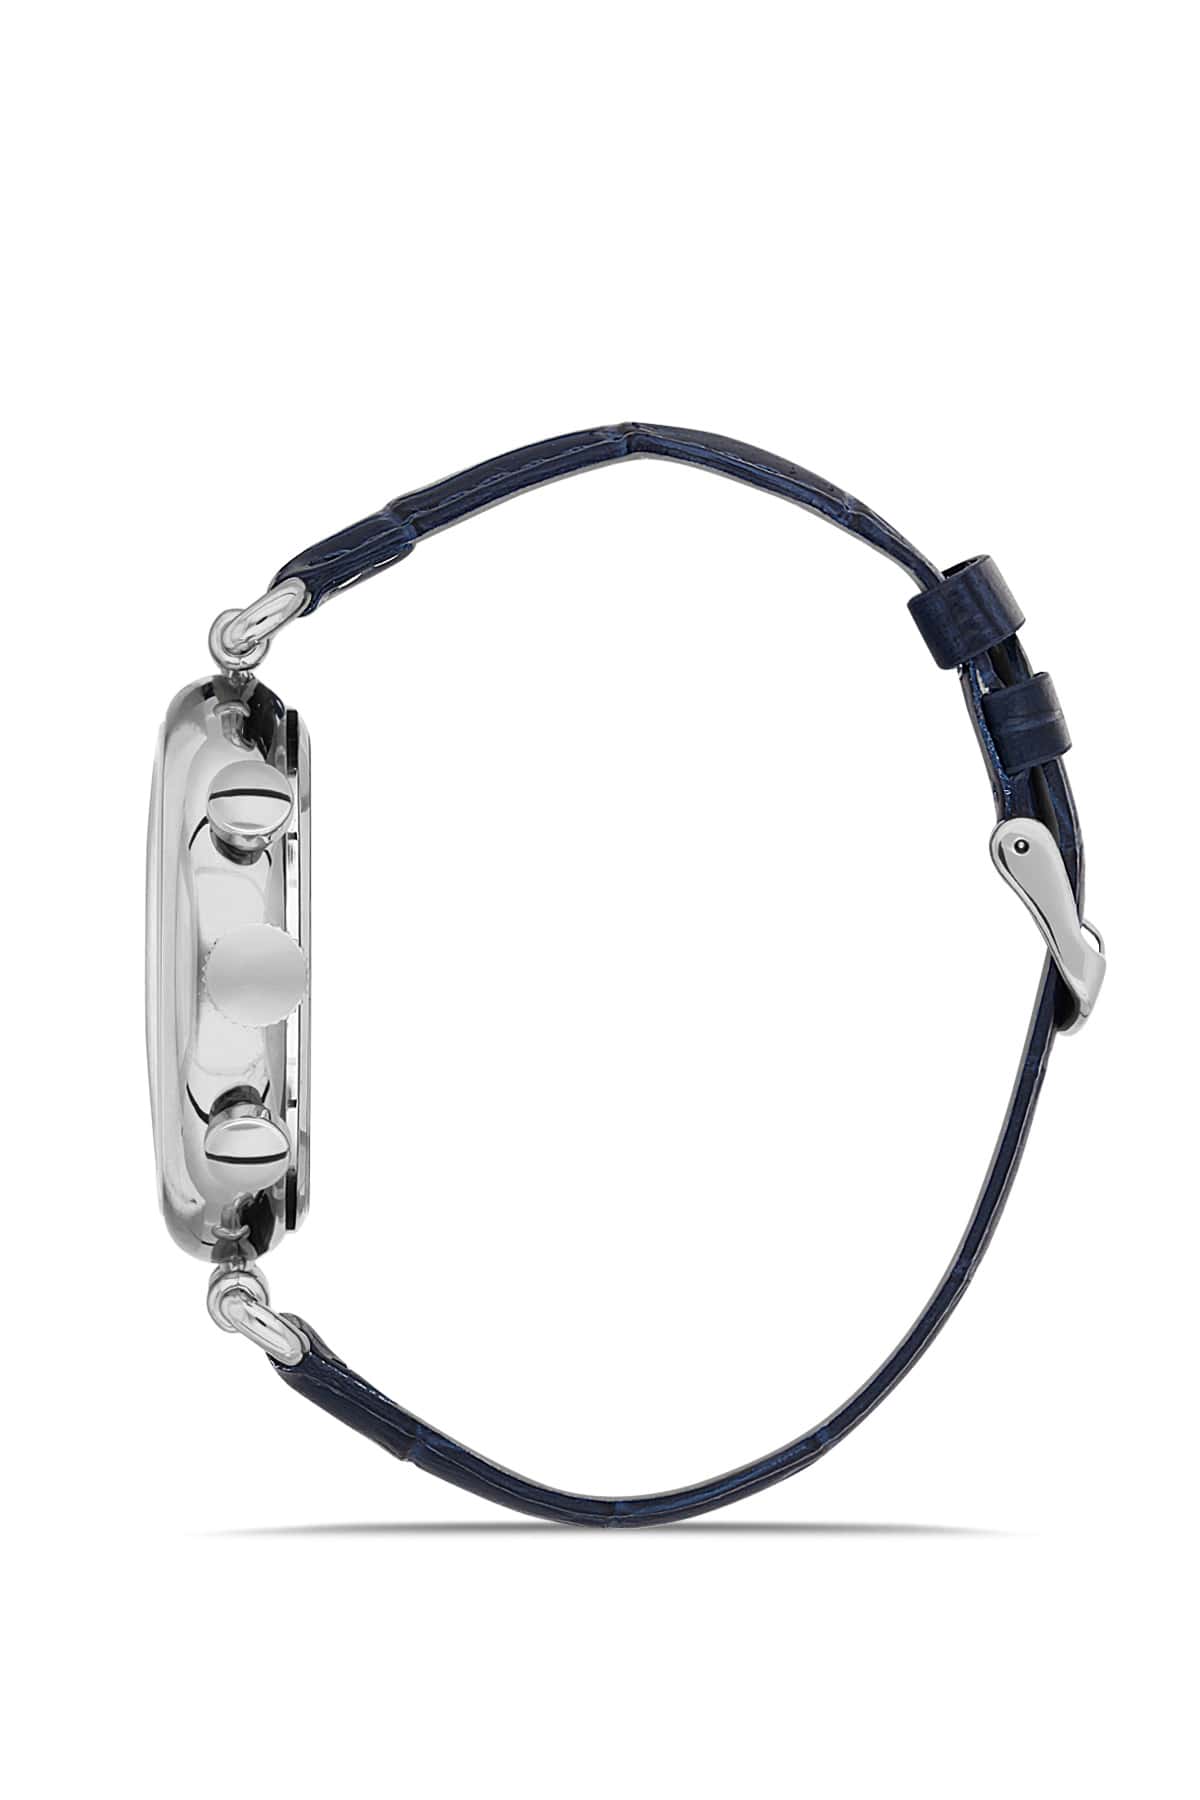 DAVID GUNER Dark Blue Dial Multifunctional Men's Wristwatch with Dark Blue Leather Strap